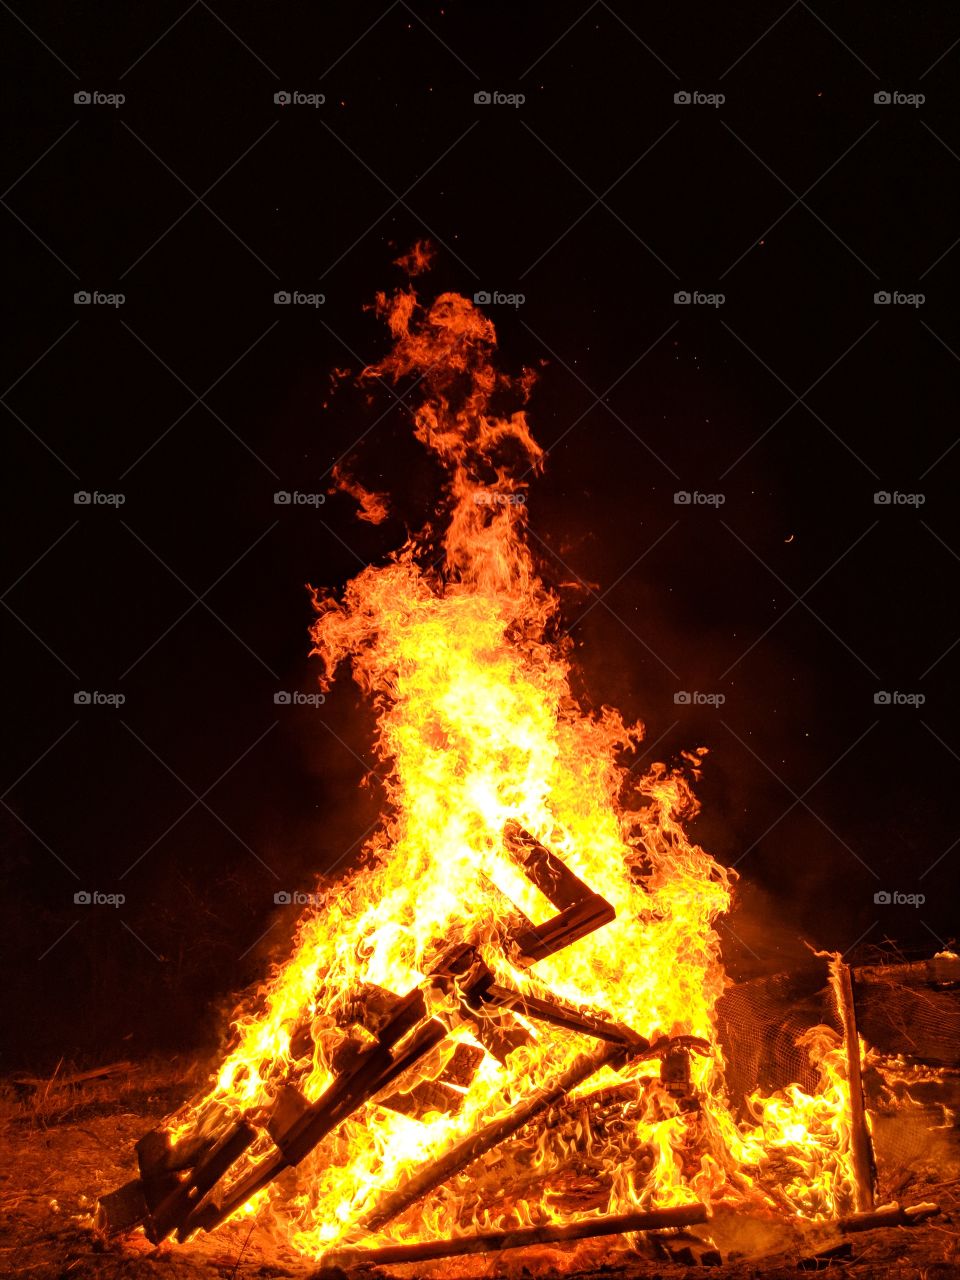 Bonfire in Rockport, TX